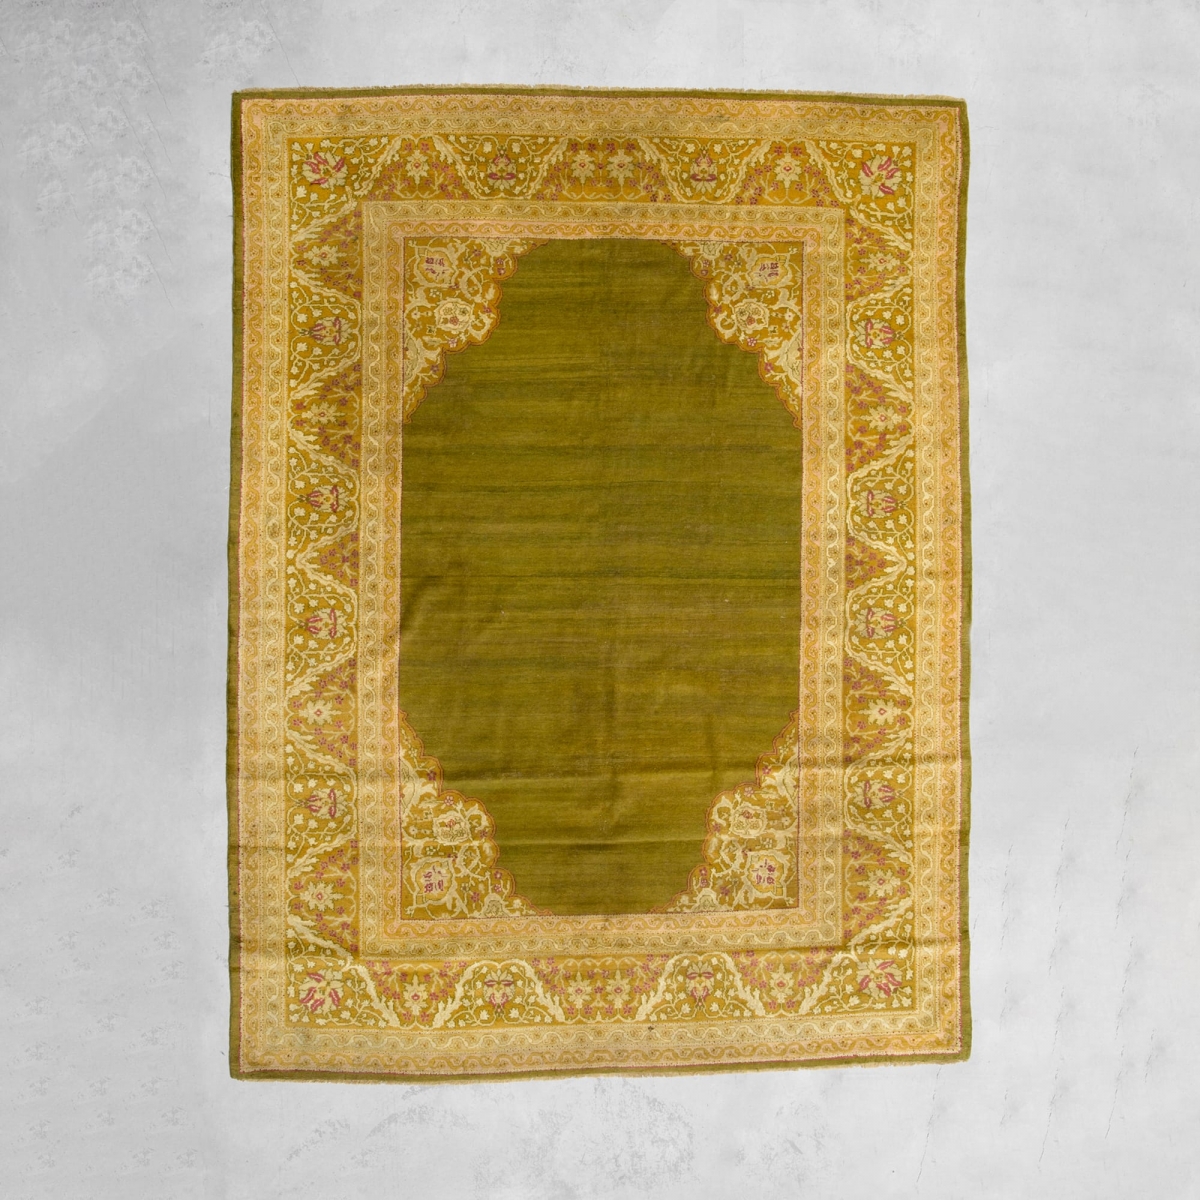 Amritsar carpet | 350 x 278 cm Antique carpet - India  pic-1